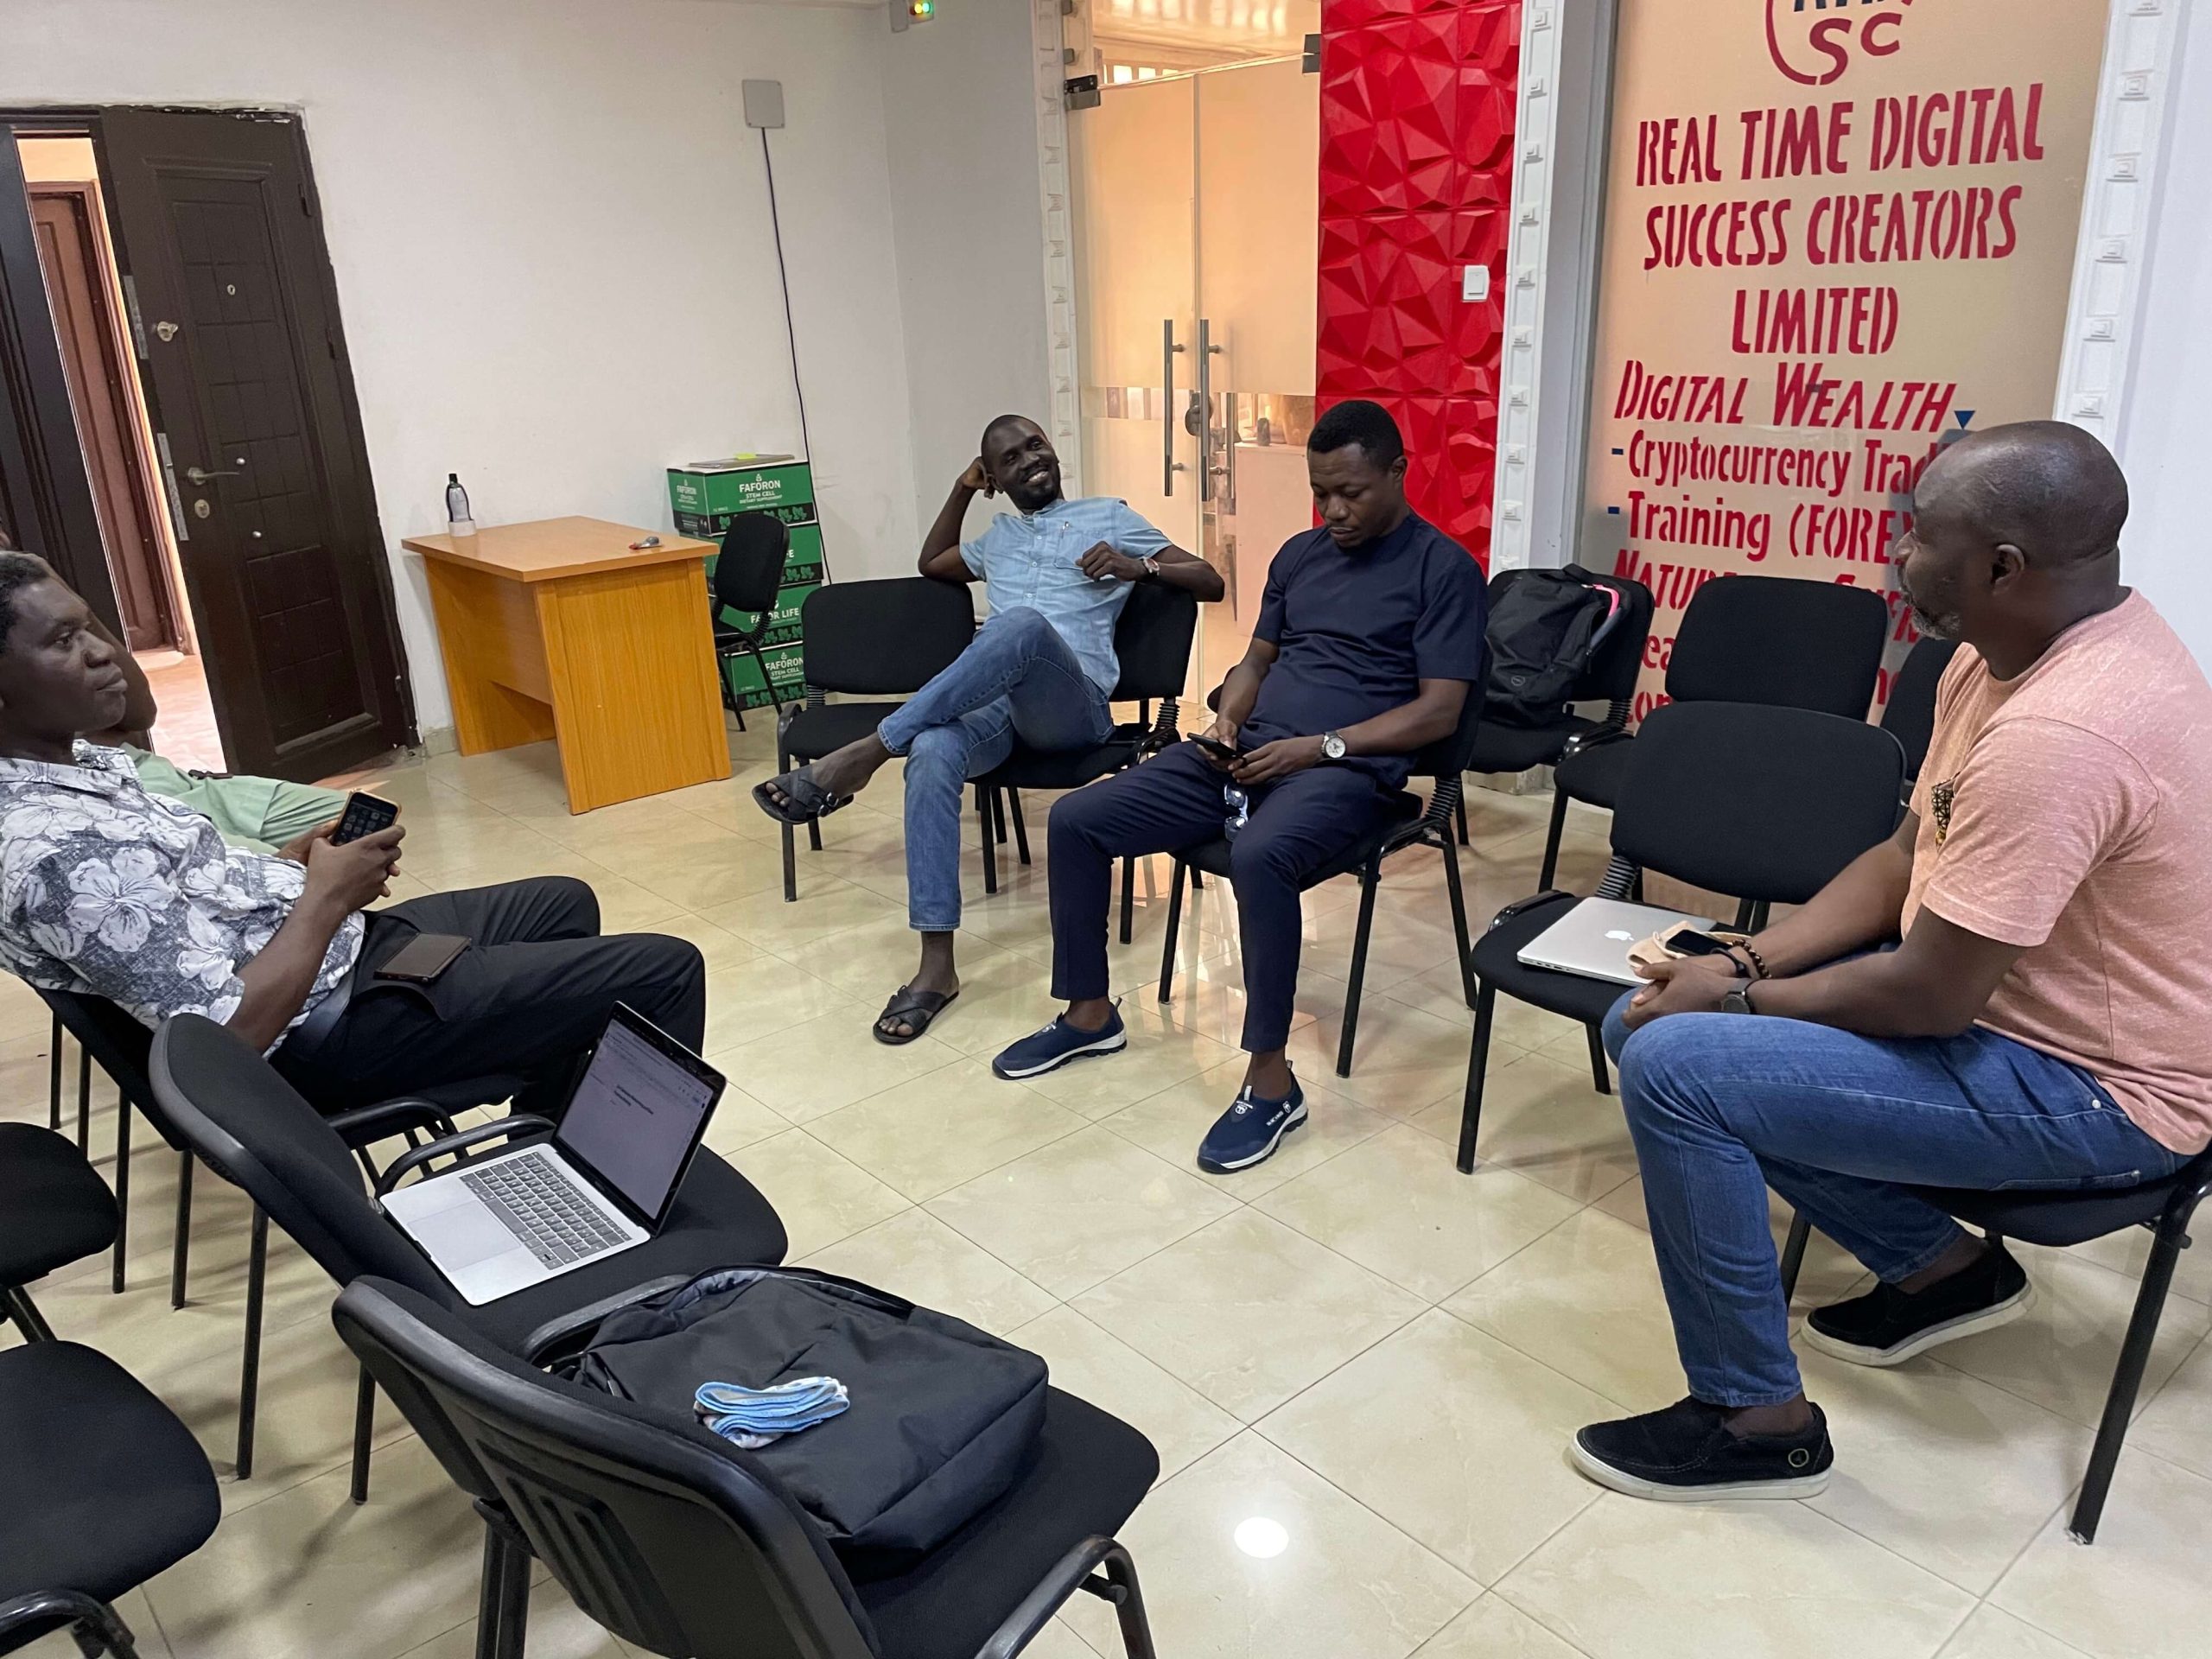 گروهی از نیجریه ای ها در یک دایره نشسته اند و در مورد دیوی بحث می کنند